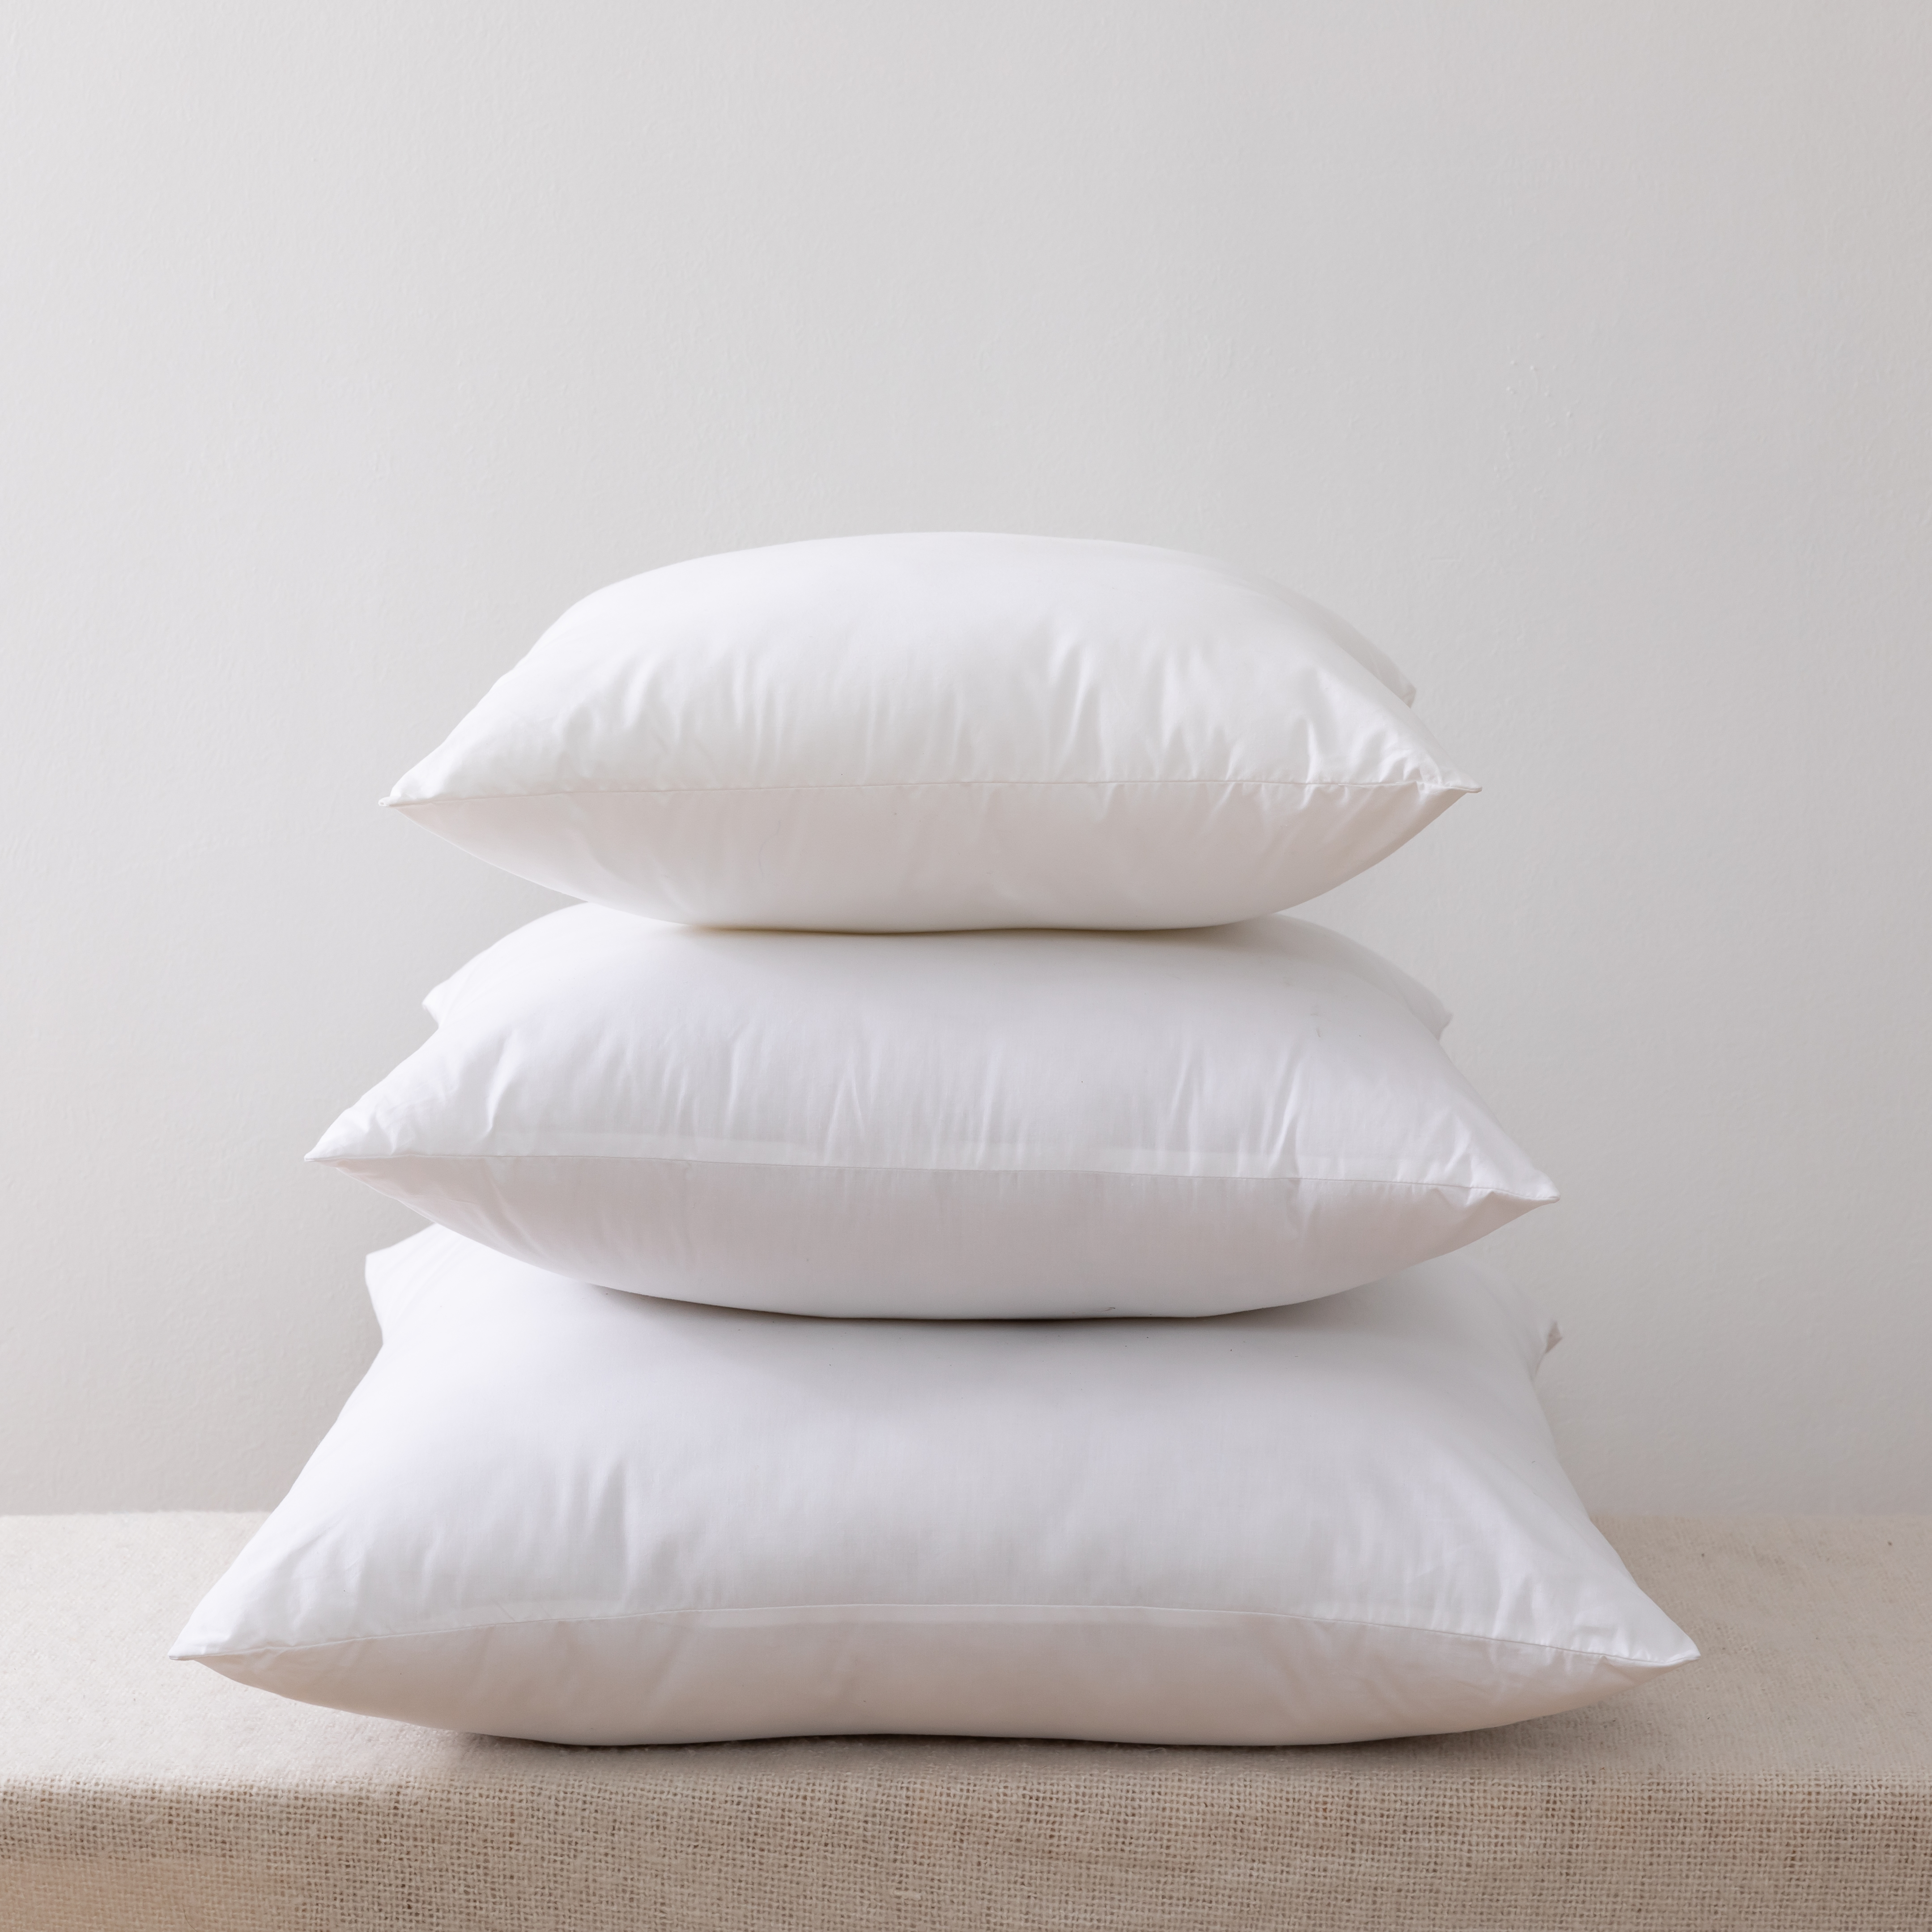 ໝອນຜ້າປູບ່ອນນອນ (ຊຸດ 2, ສີຂາວ), ໝອນຂະໜາດ 18 x 18 ນິ້ວ ສຳລັບໂຊຟາ, ຕຽງ ແລະບ່ອນນອນ Decorative Stuffer Pillows-Interior Sofa Pillow Inserts